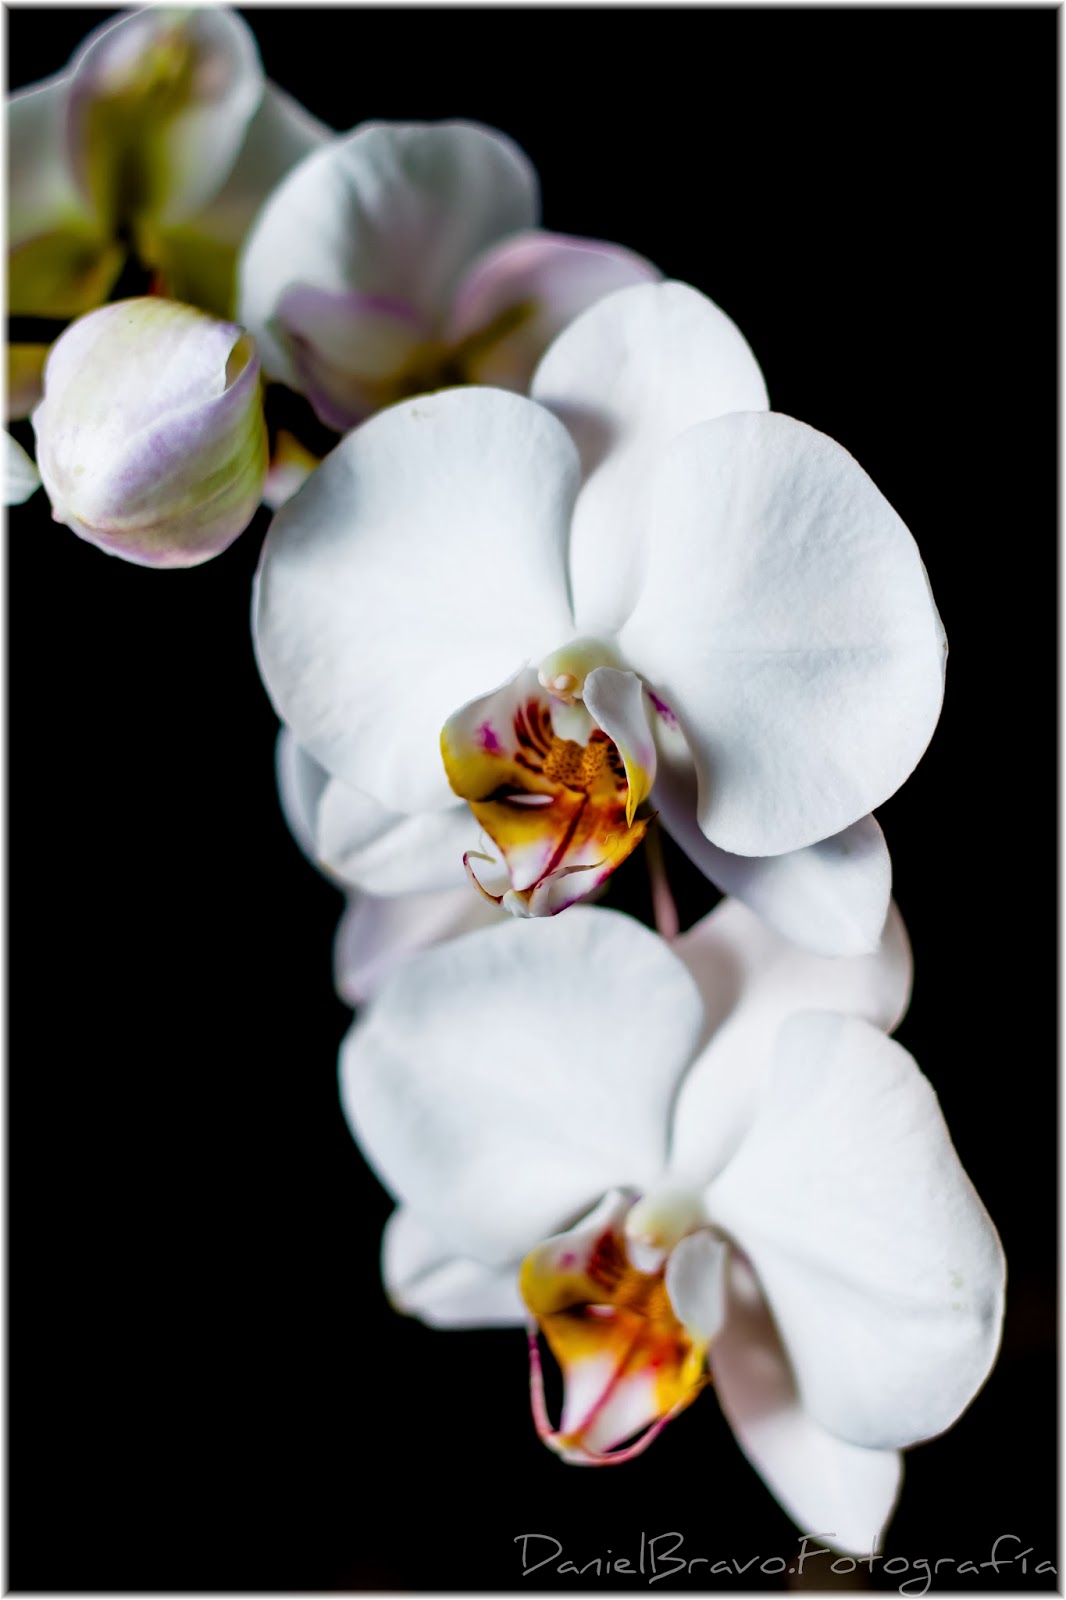 Orquídea blanca, planta de orquídea blanca, rama con orquídeas blancas en fondo negro